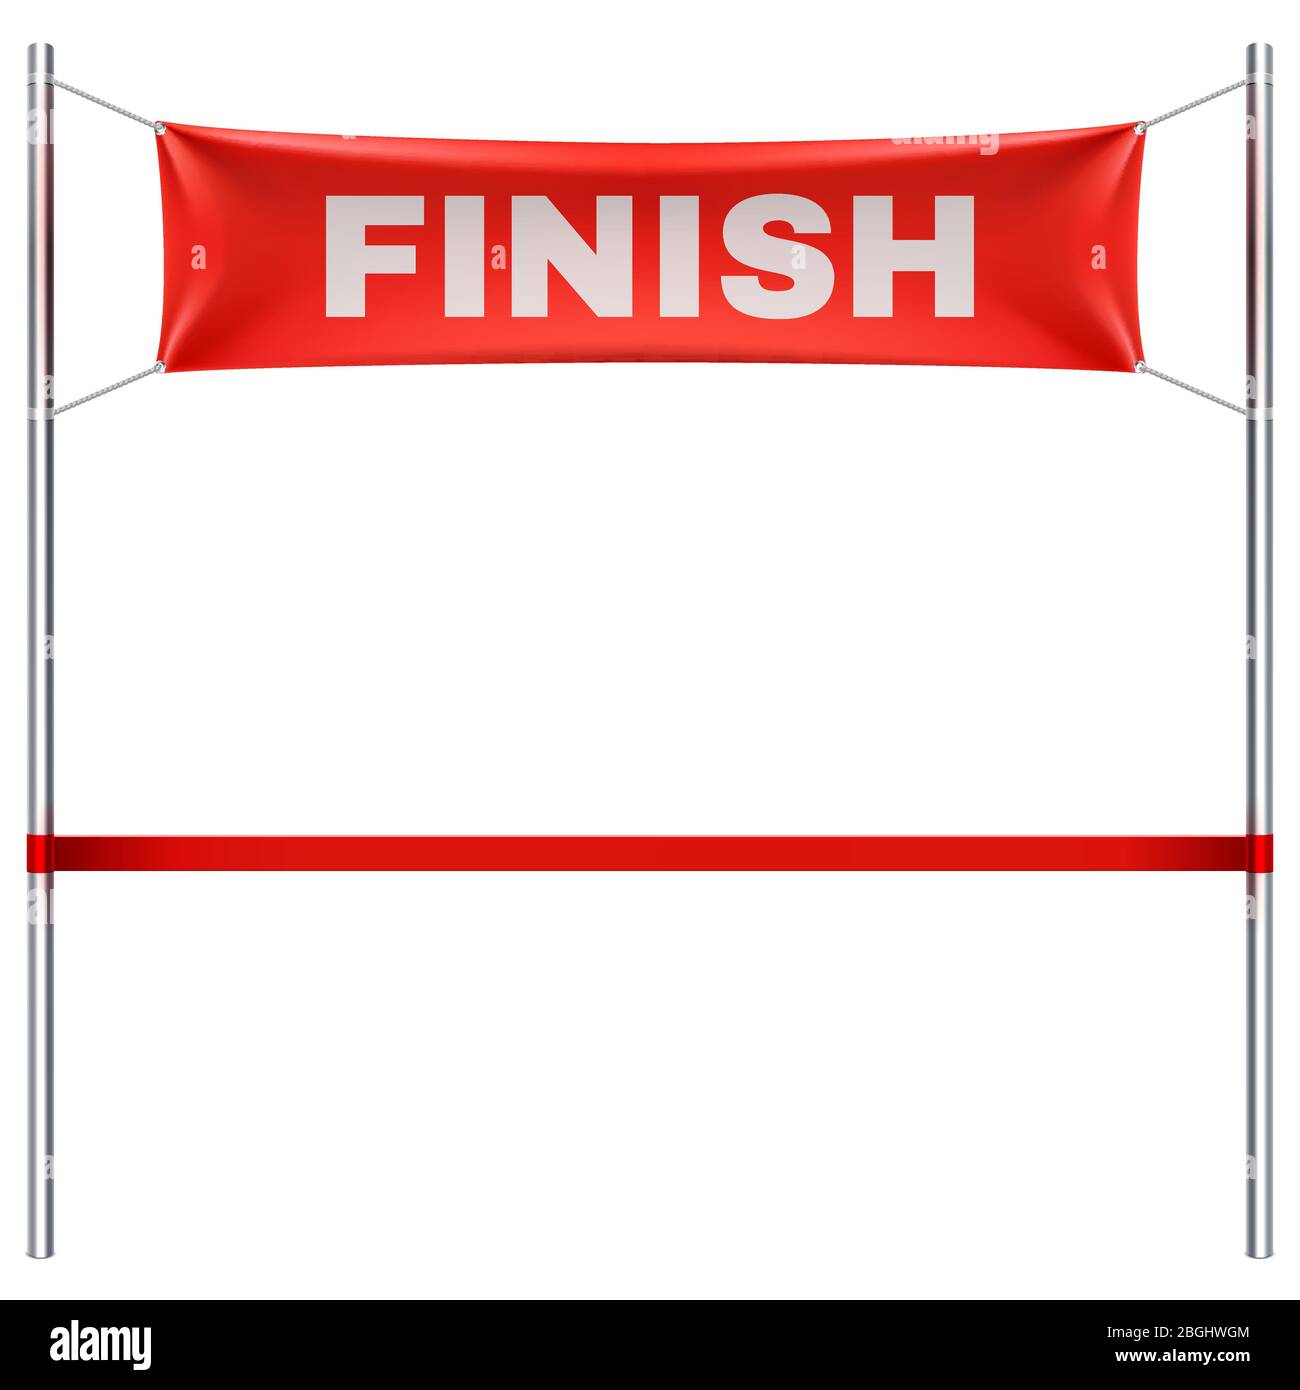 Linea di finitura con banner in tessuto rosso e illustrazione vettoriale del nastro isolato su sfondo bianco. Termina gara sportiva, vittoria e successo finale Illustrazione Vettoriale